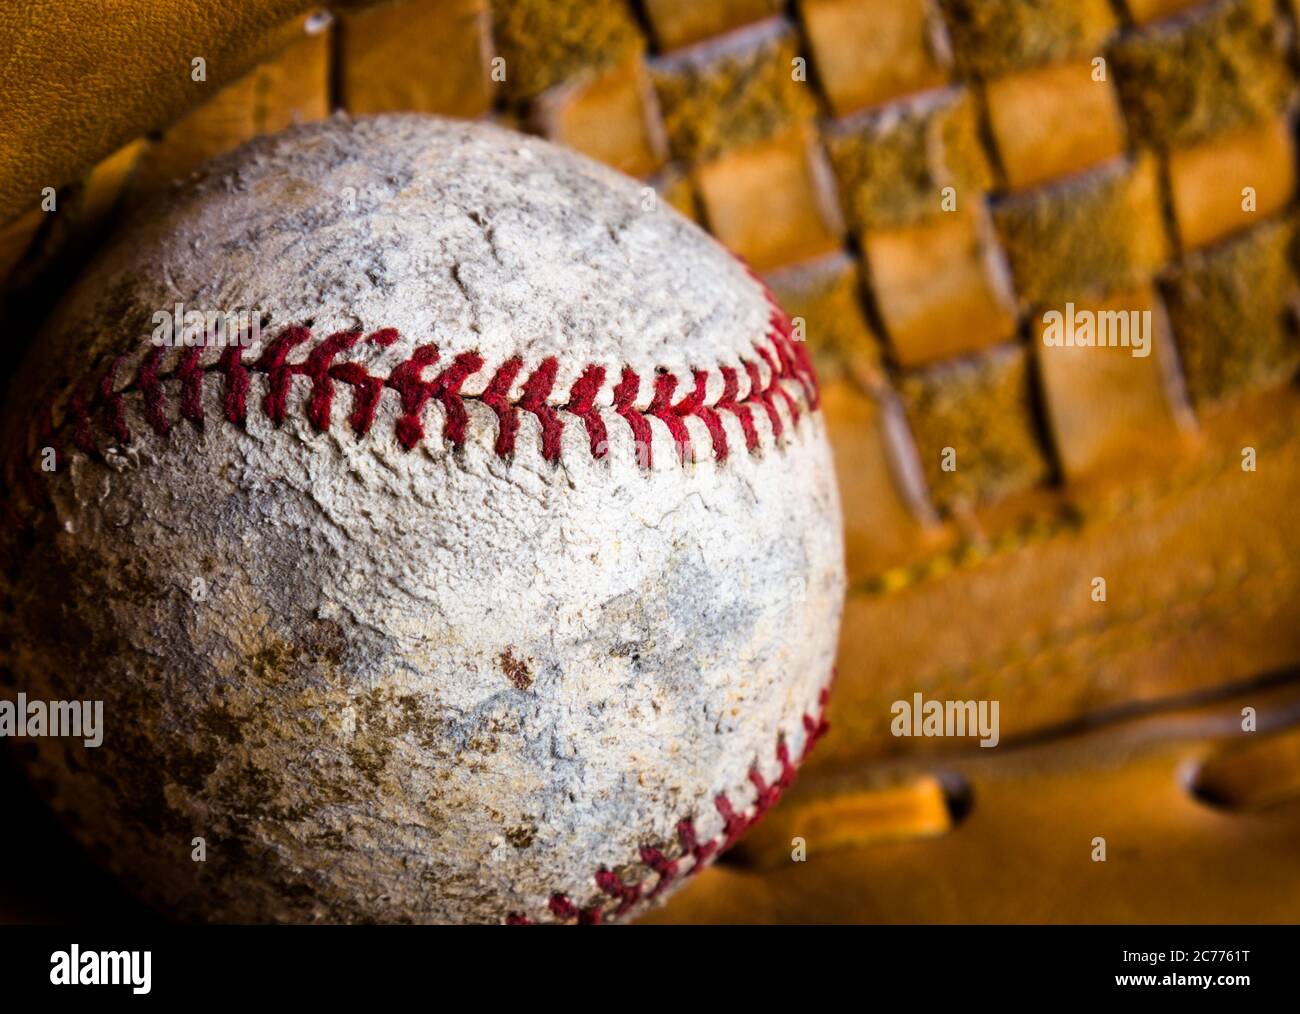 Nahaufnahme des Baseballs in einem Handschuh. Der Ball ist alt und beschädigt, gut mit Abrieb, Flecken und Nähen an Stellen verwendet. Stockfoto